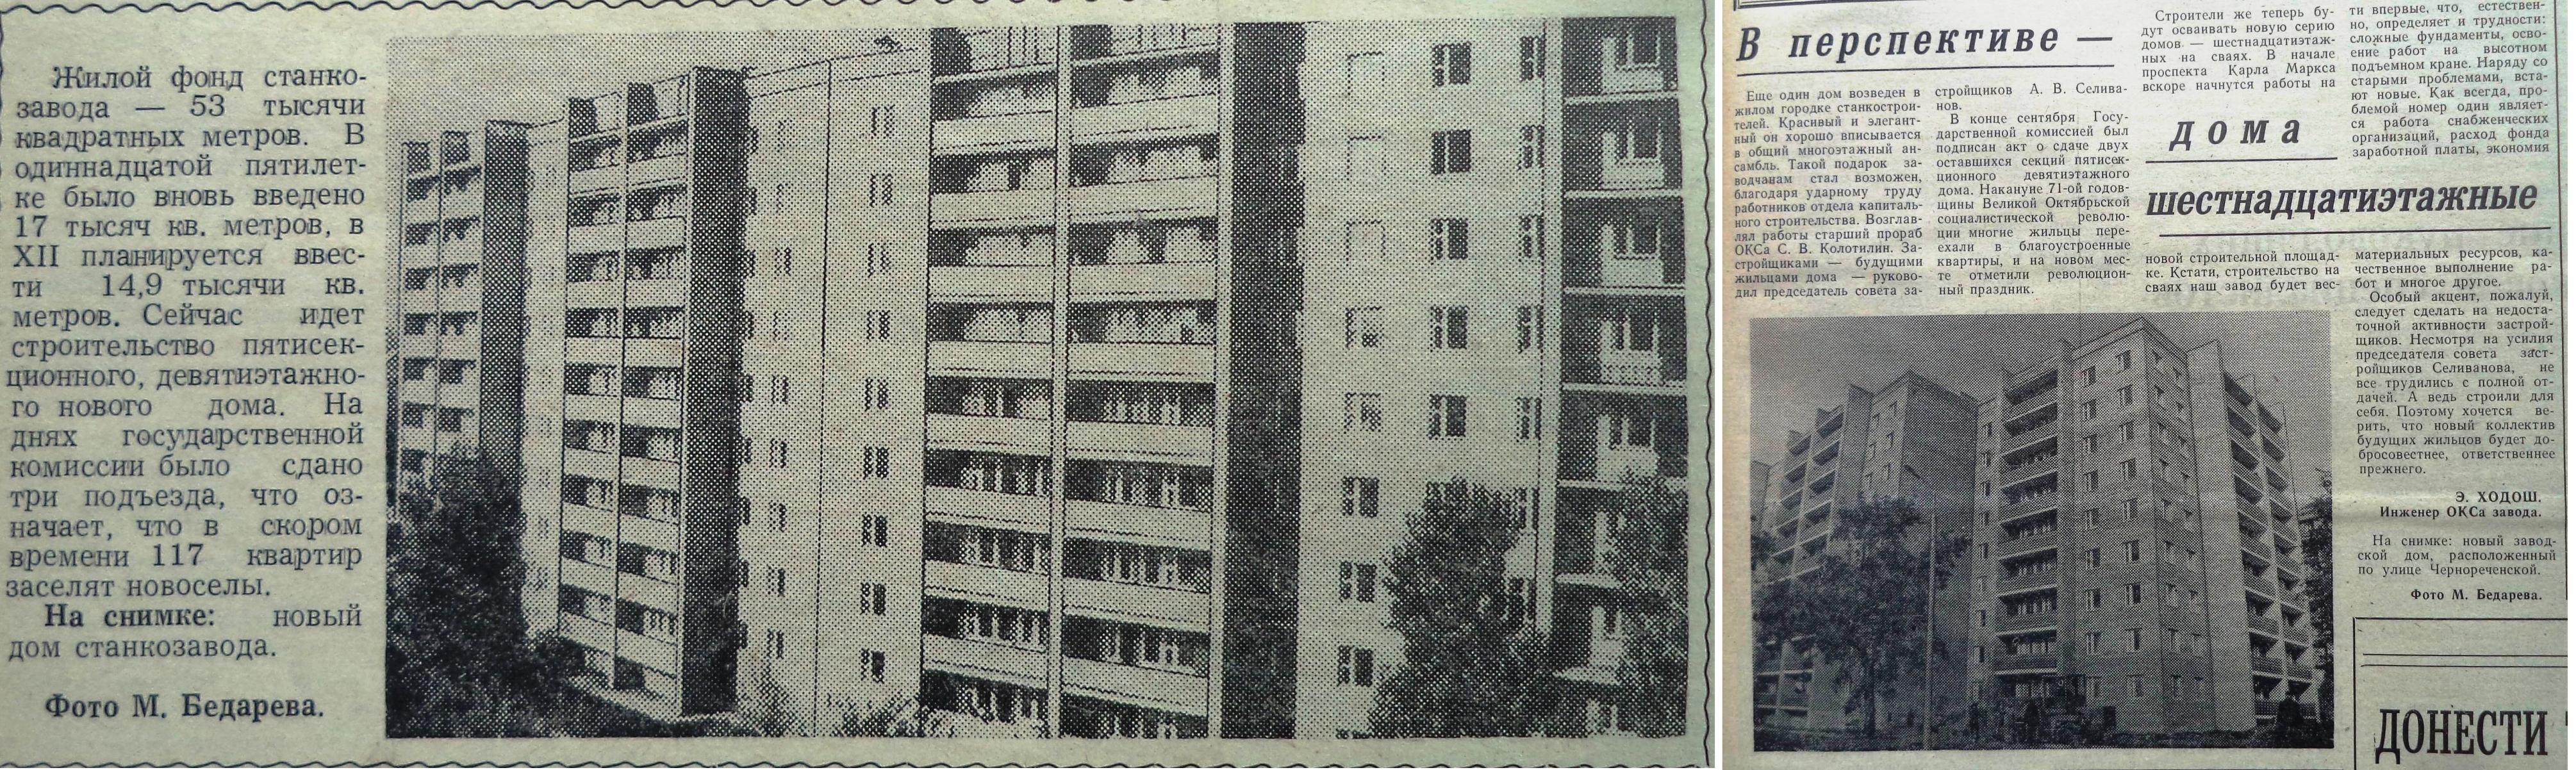 Газетные заметки 1987 (слева) и 1988 года о строительстве дома по Чернореченской, 16а. 